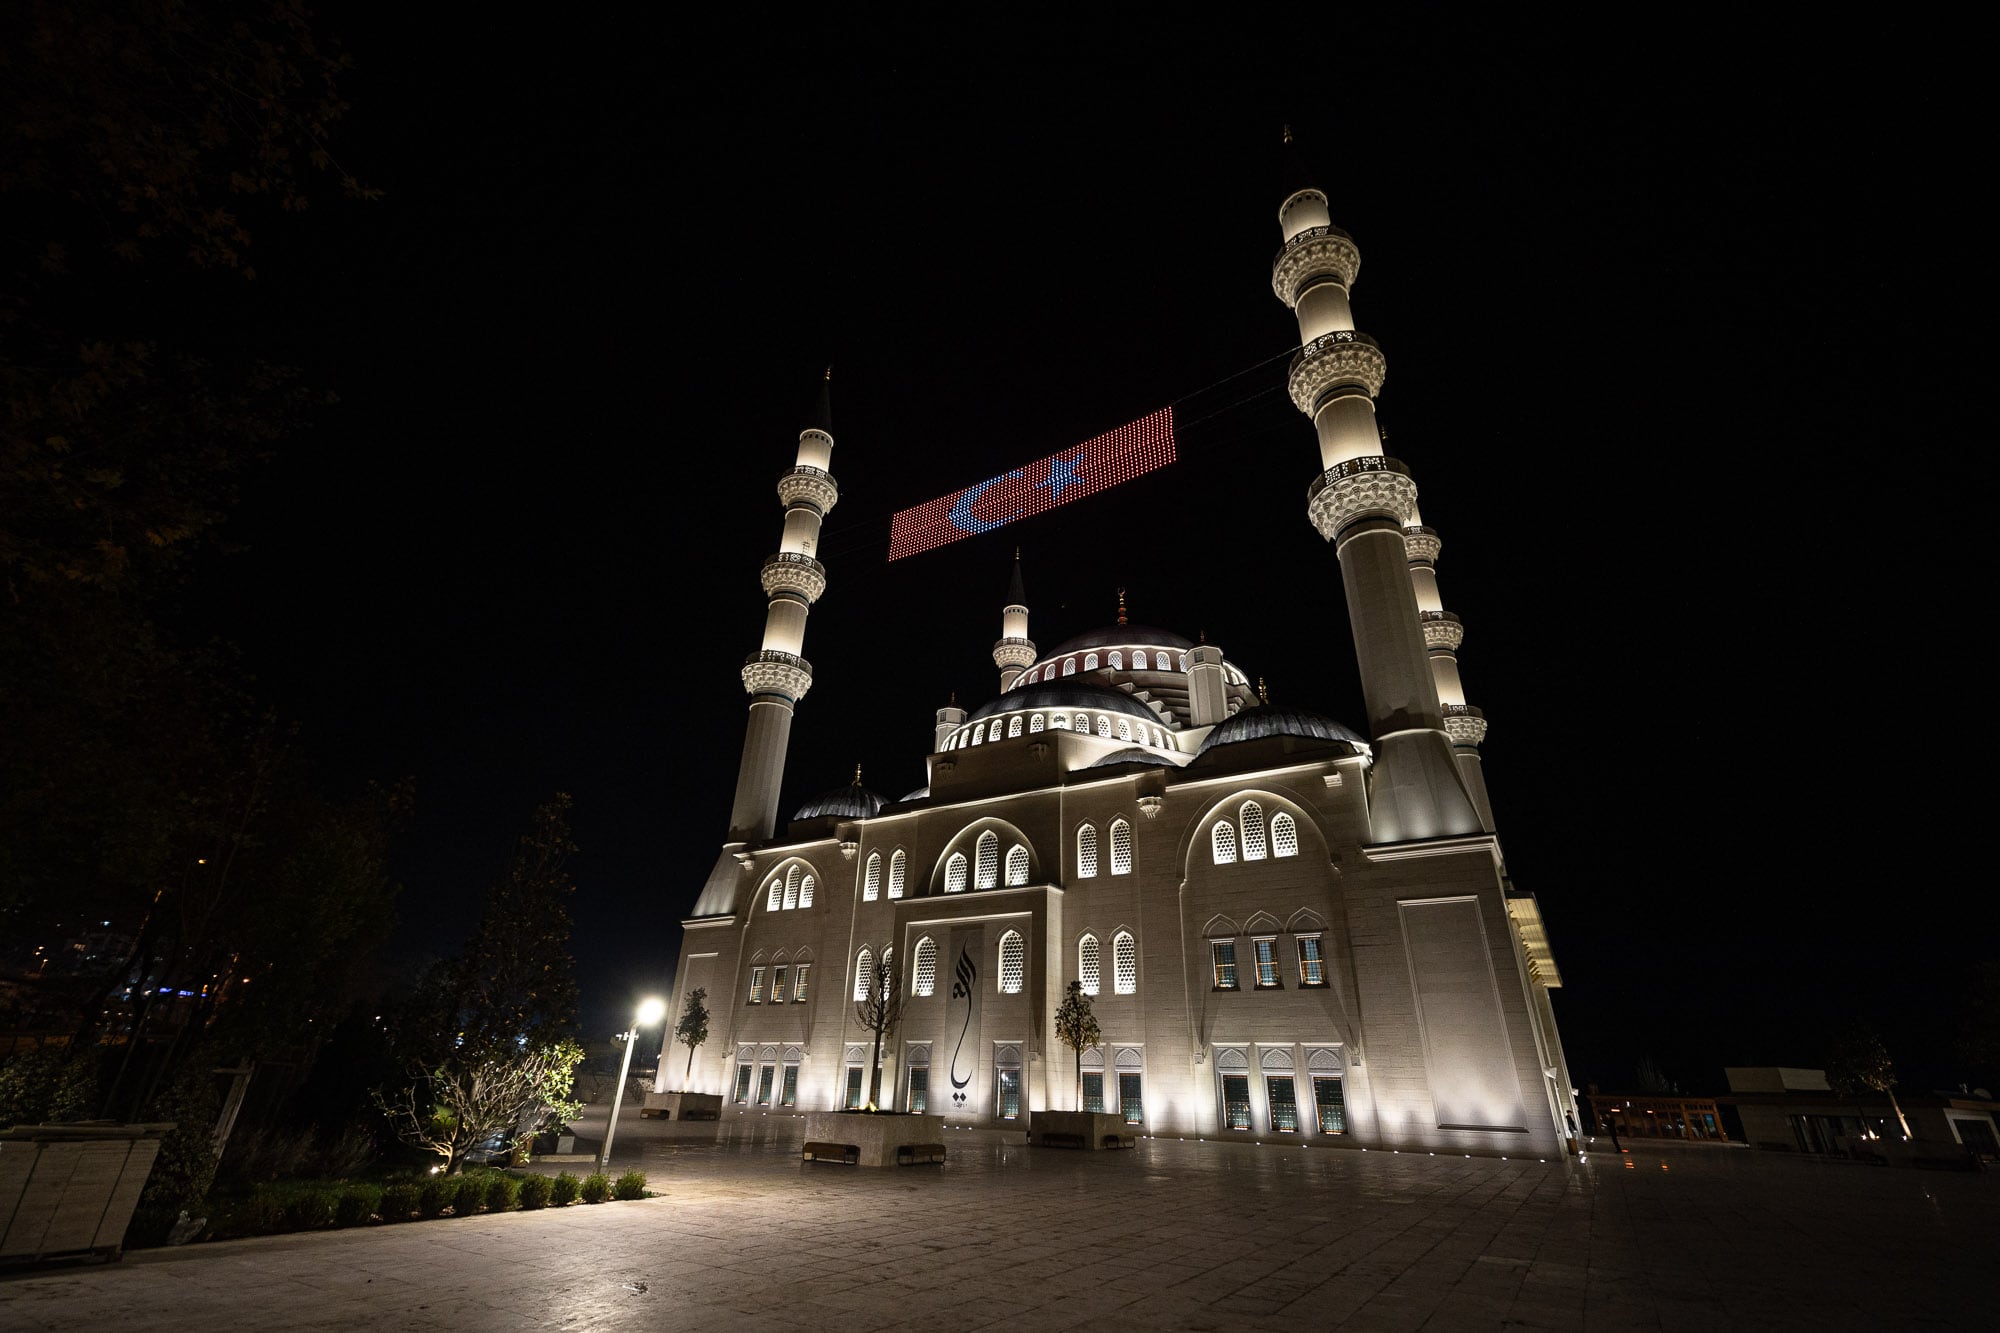 Uzun Mehmet Mosque in Zonguldak